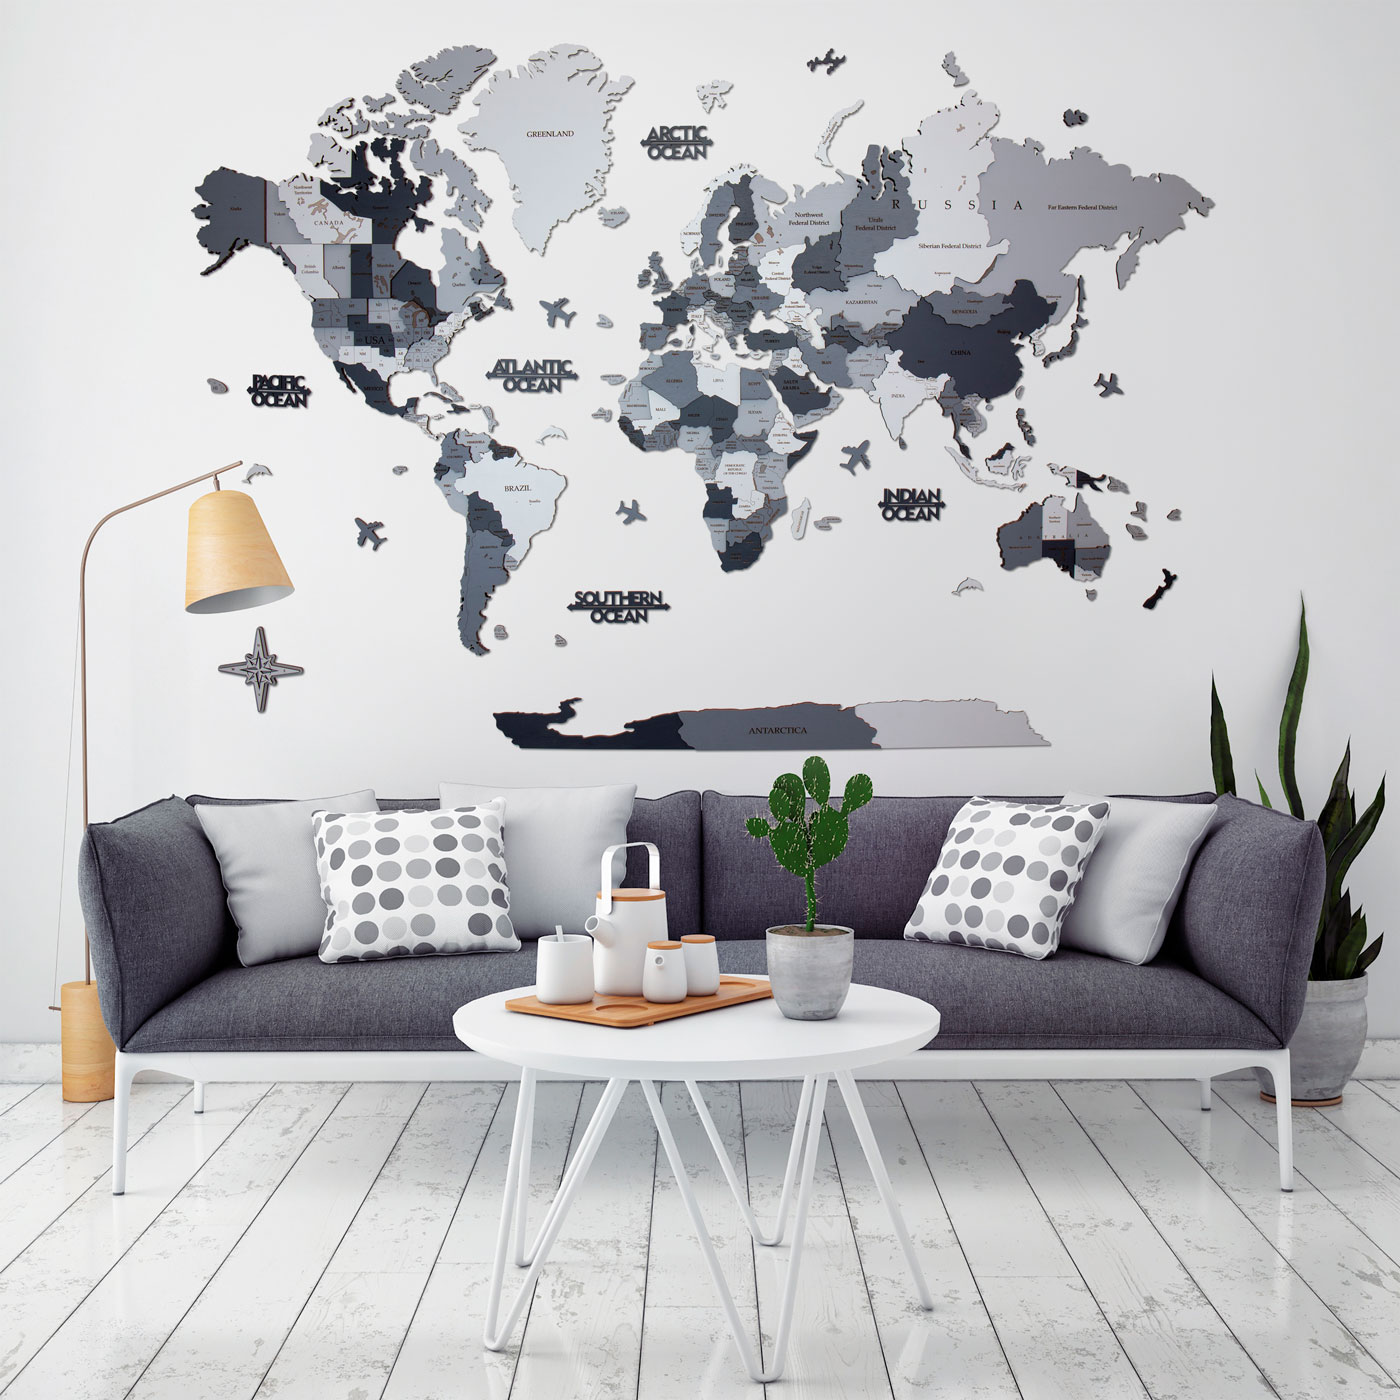 Τρισδιάστατος ξύλινος παγκόσμιος χάρτης. Ξύλινη διακόσμηση τοίχου. Αστικά χρώματα καμουφλάζ του χάρτη από την Ksilart. Γκρι ξύλινος παγκόσμιος χάρτης